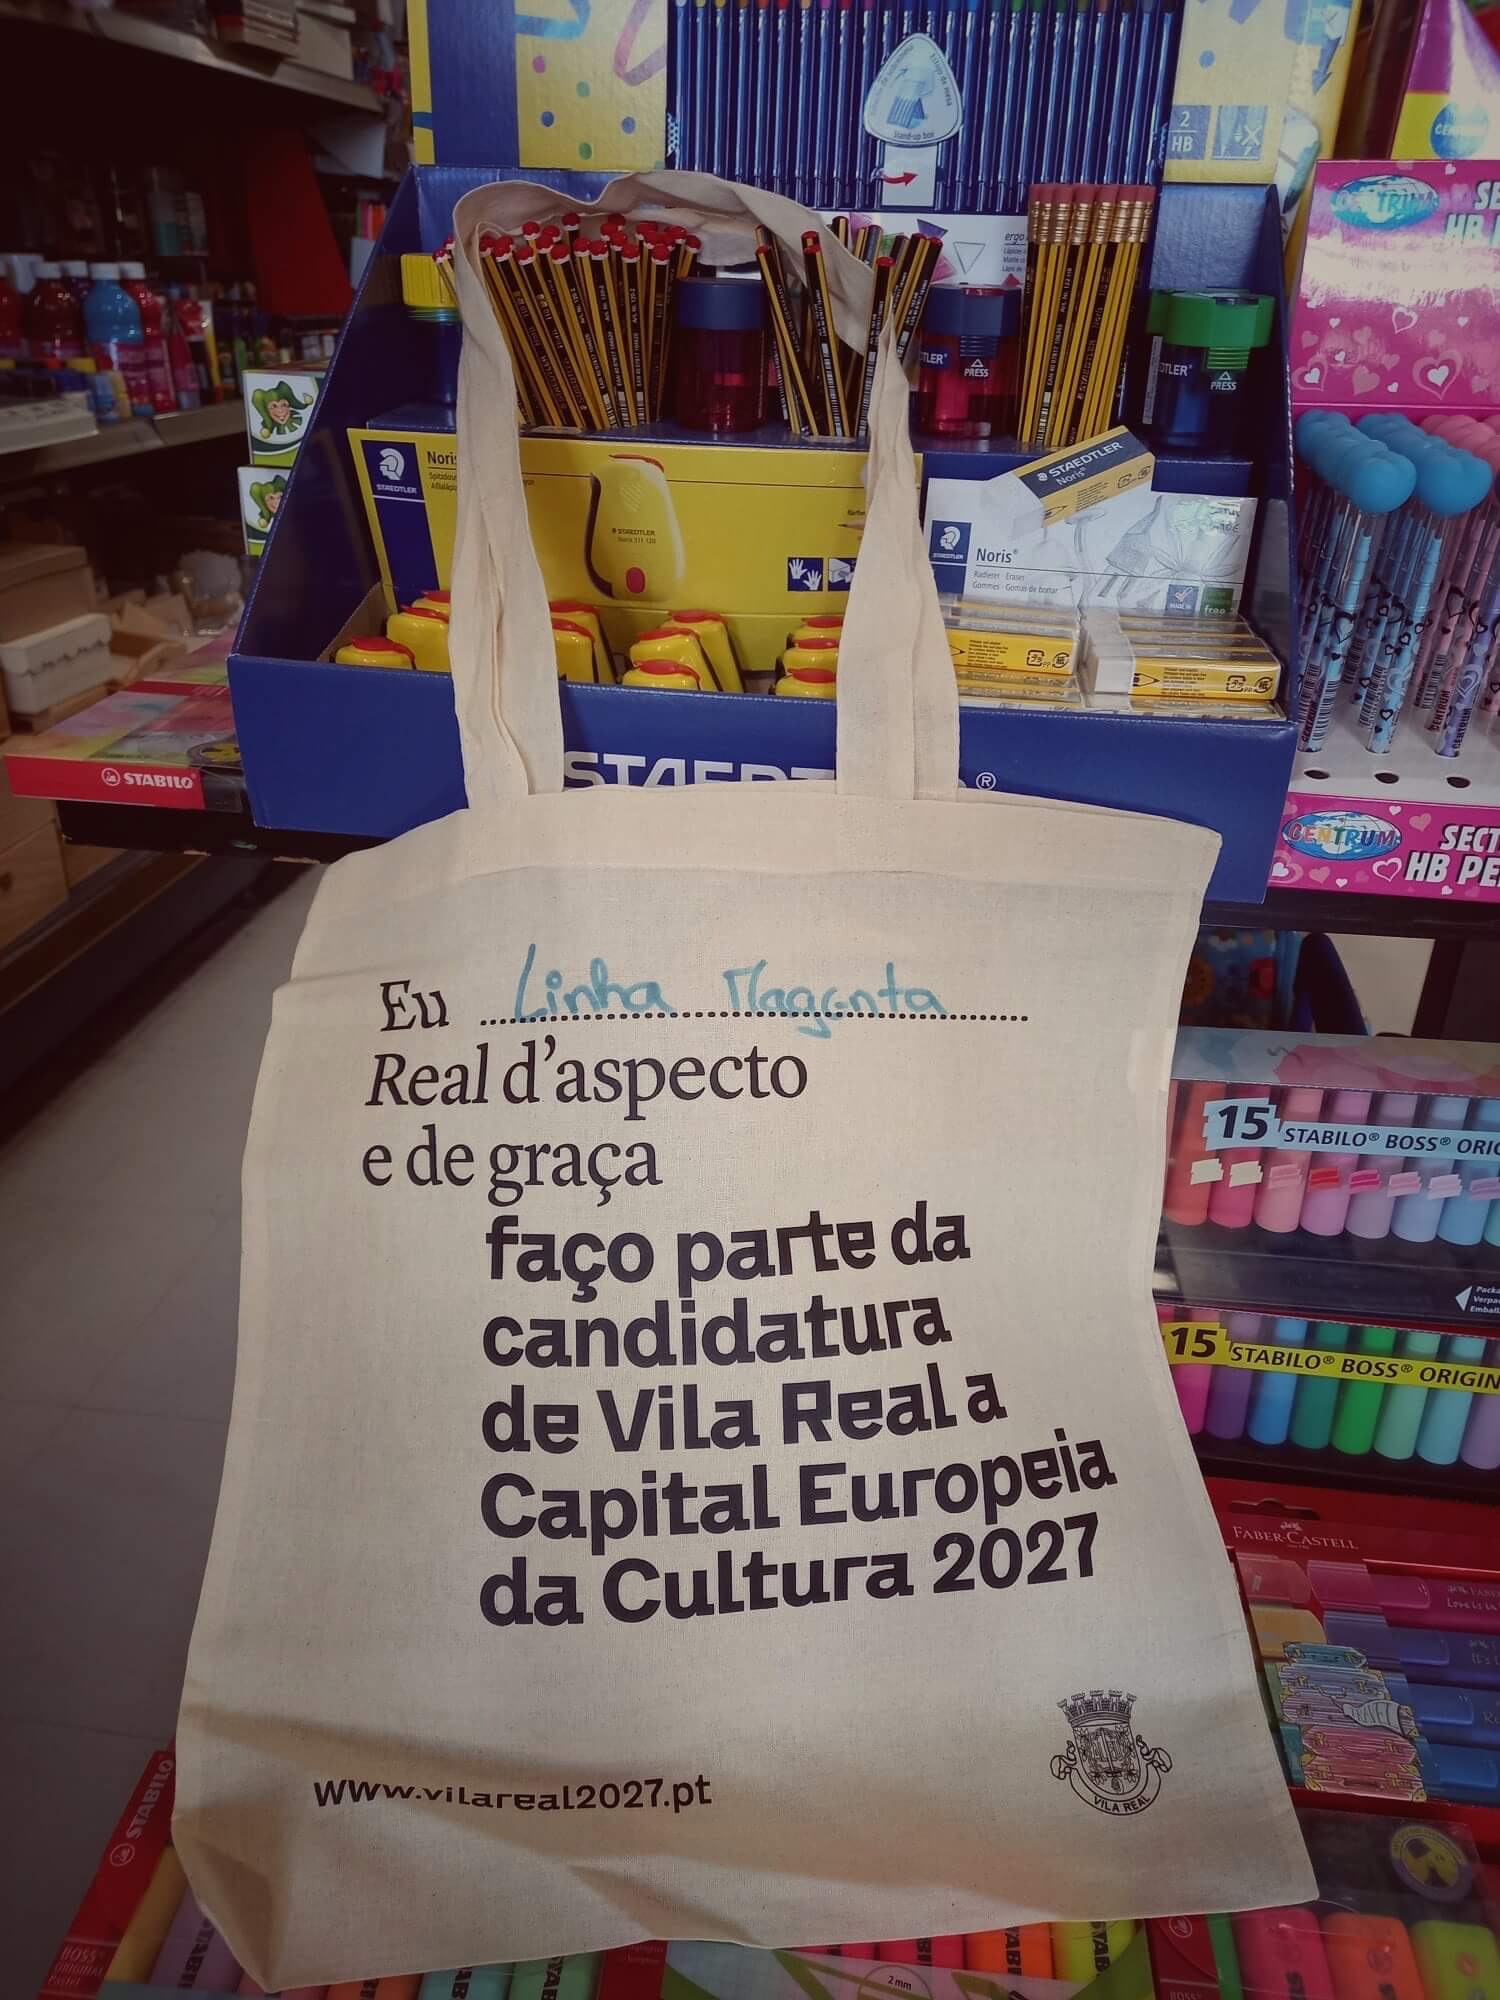 Vila Real 2027